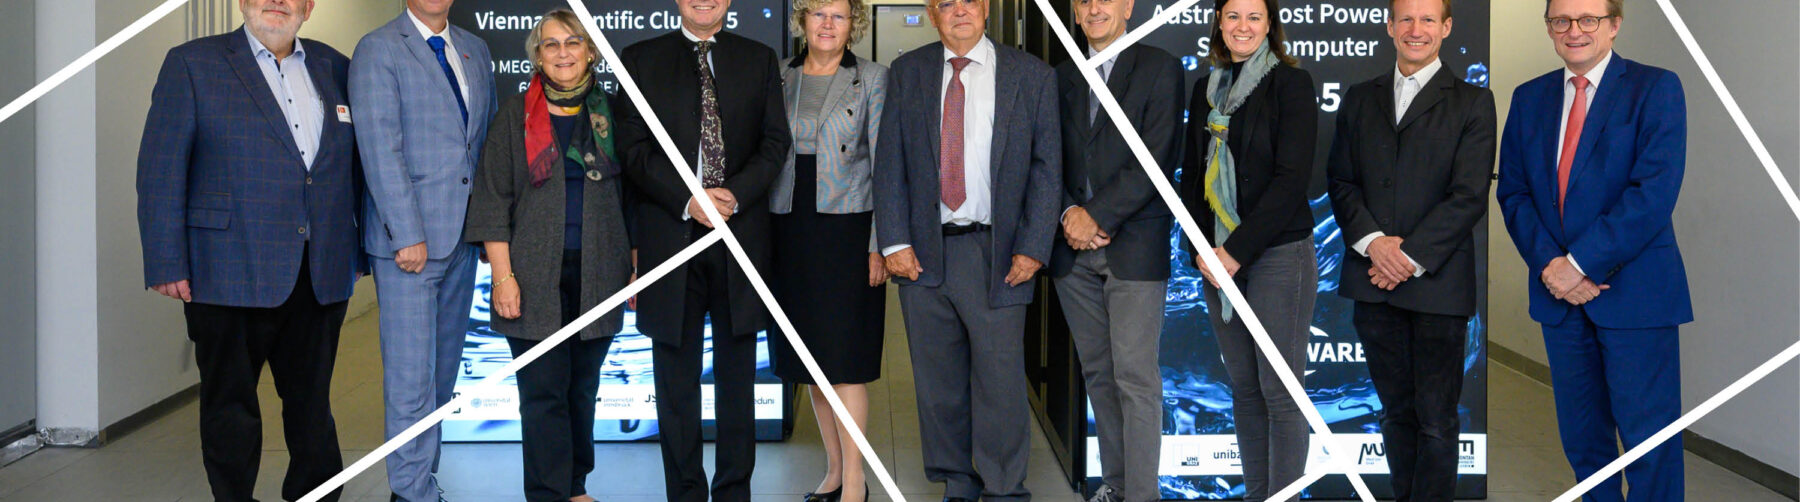 Headerbild mit Gitternetzlinien Eröffnung Supercomputer VSC VSC 5 im Hintergrund, davor Gruppe stehend, Mitte Rektorin Seidler und Bildungsminster Polaschek